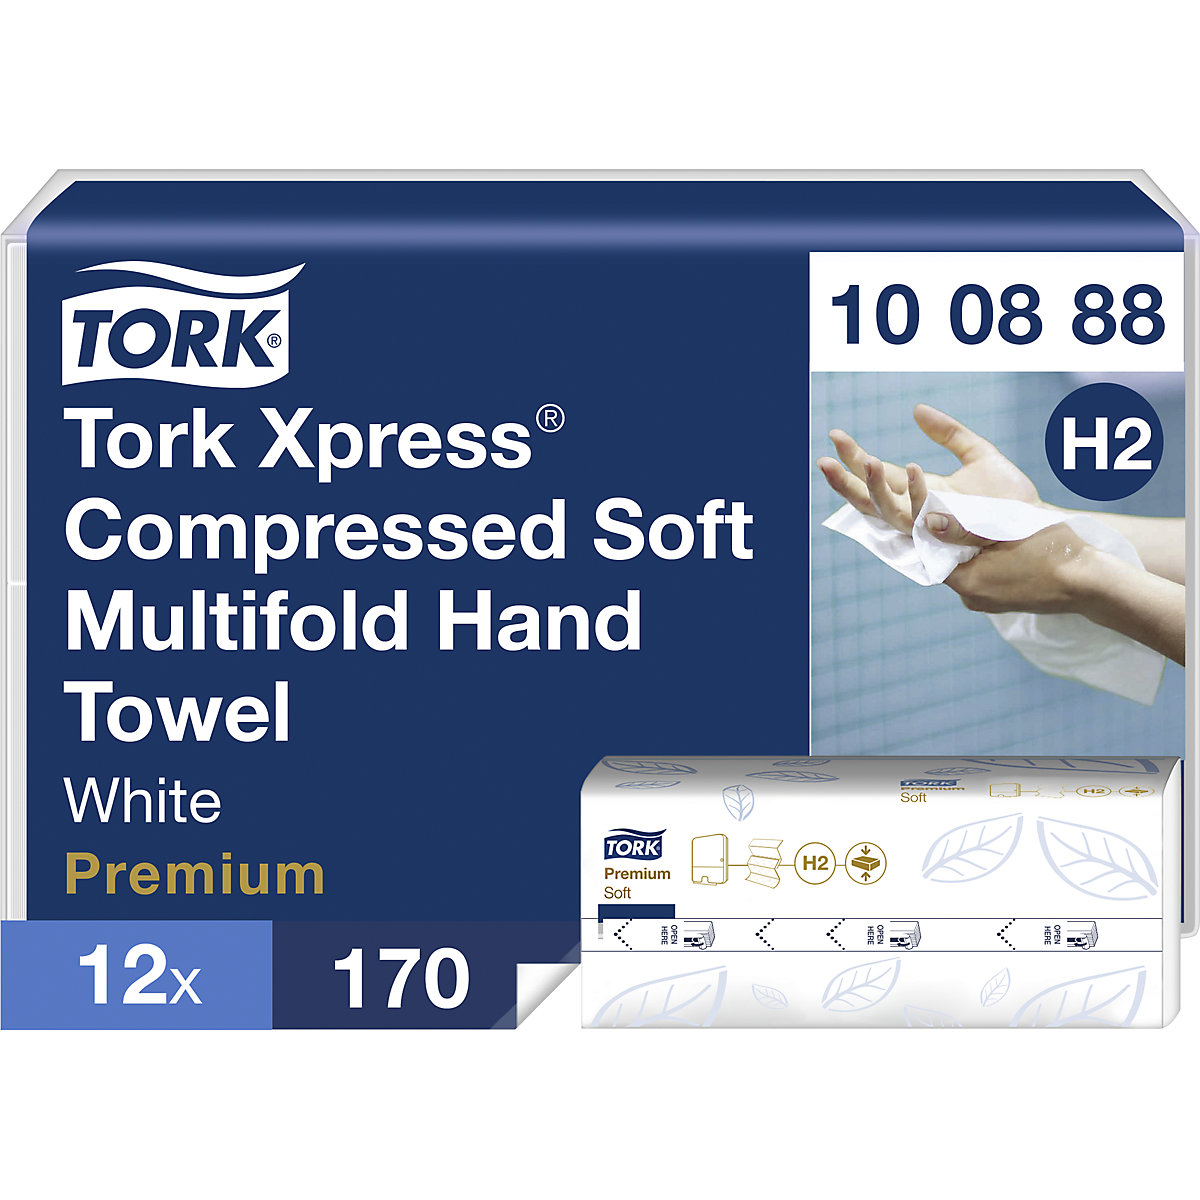 Xpress gecomprimeerde multifold papieren handdoekjes - TORK